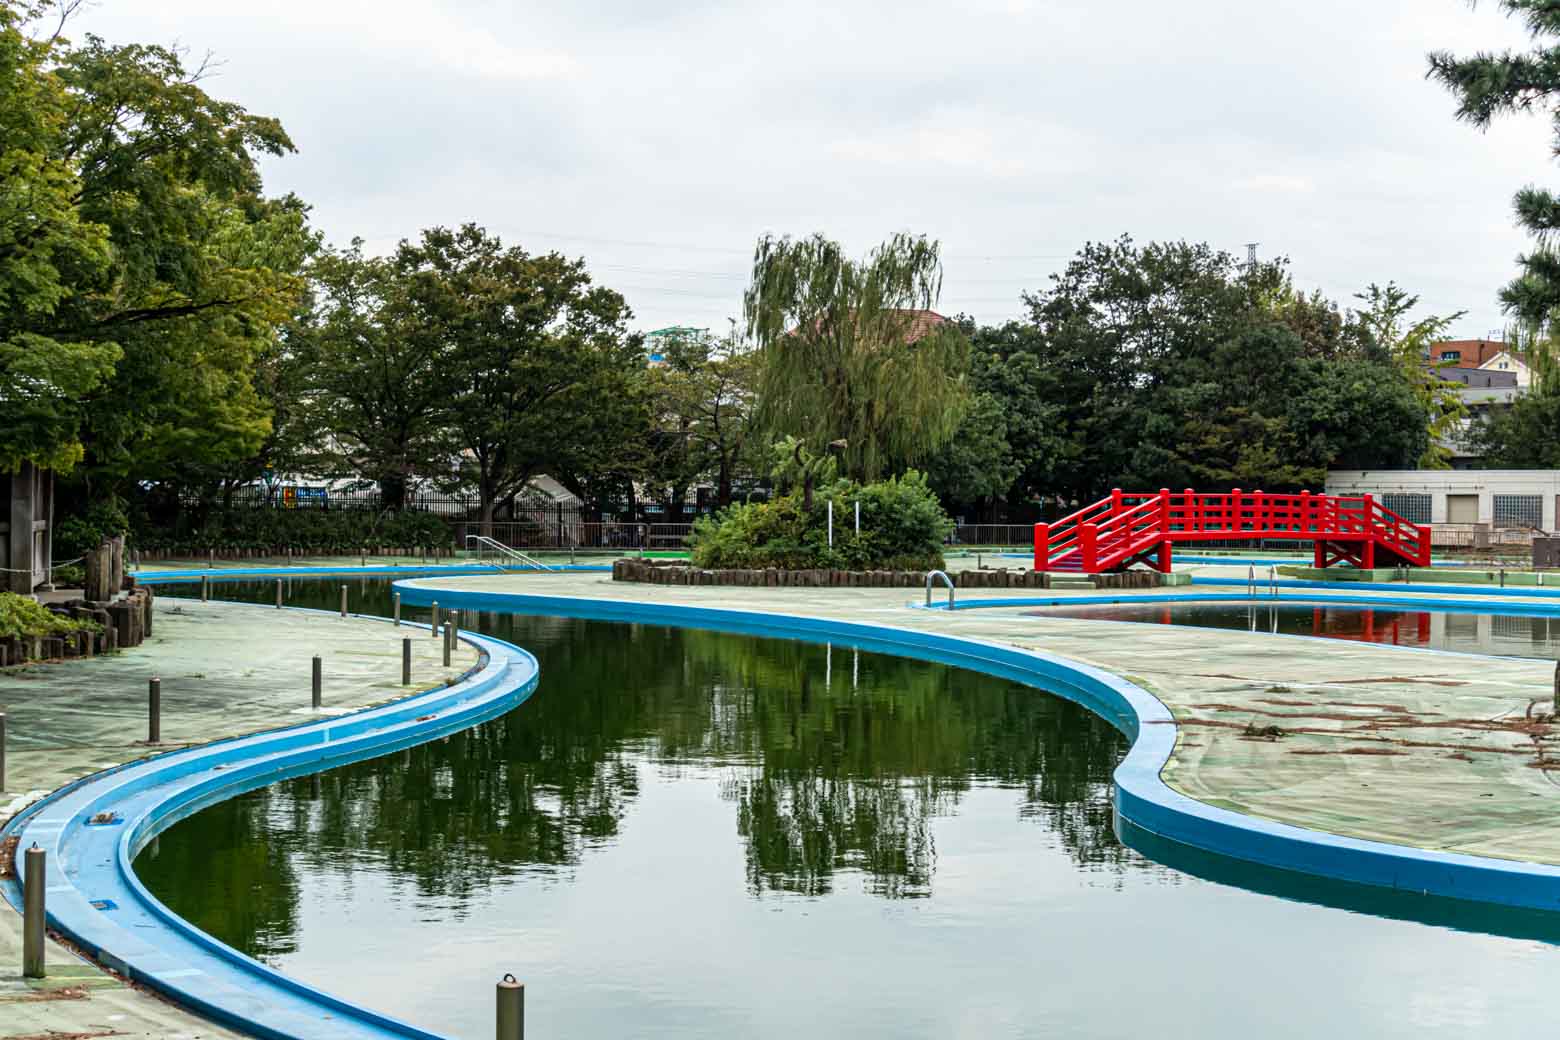 菊名池公園に到着。敷地内にプールがあり、7月中旬から9月初旬頃まで営業しています。1時間単位でも利用できるので、ちょっとした気分転換にも良さそうです。